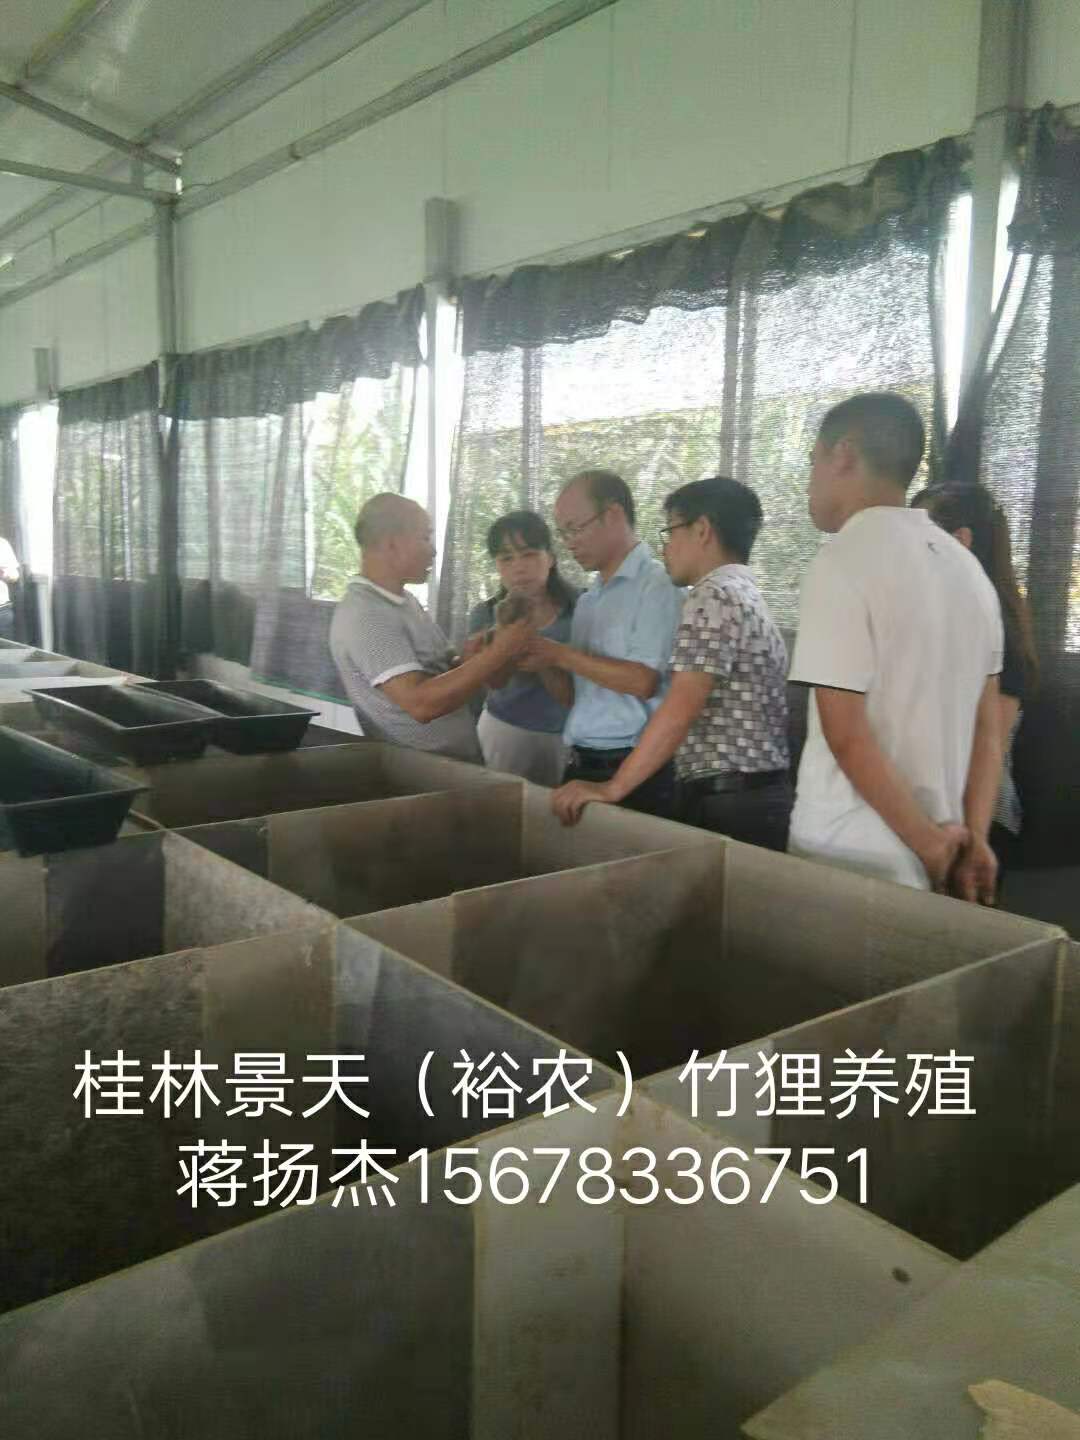 竹鼠养殖专业合作社-广西桂林竹鼠养殖交流